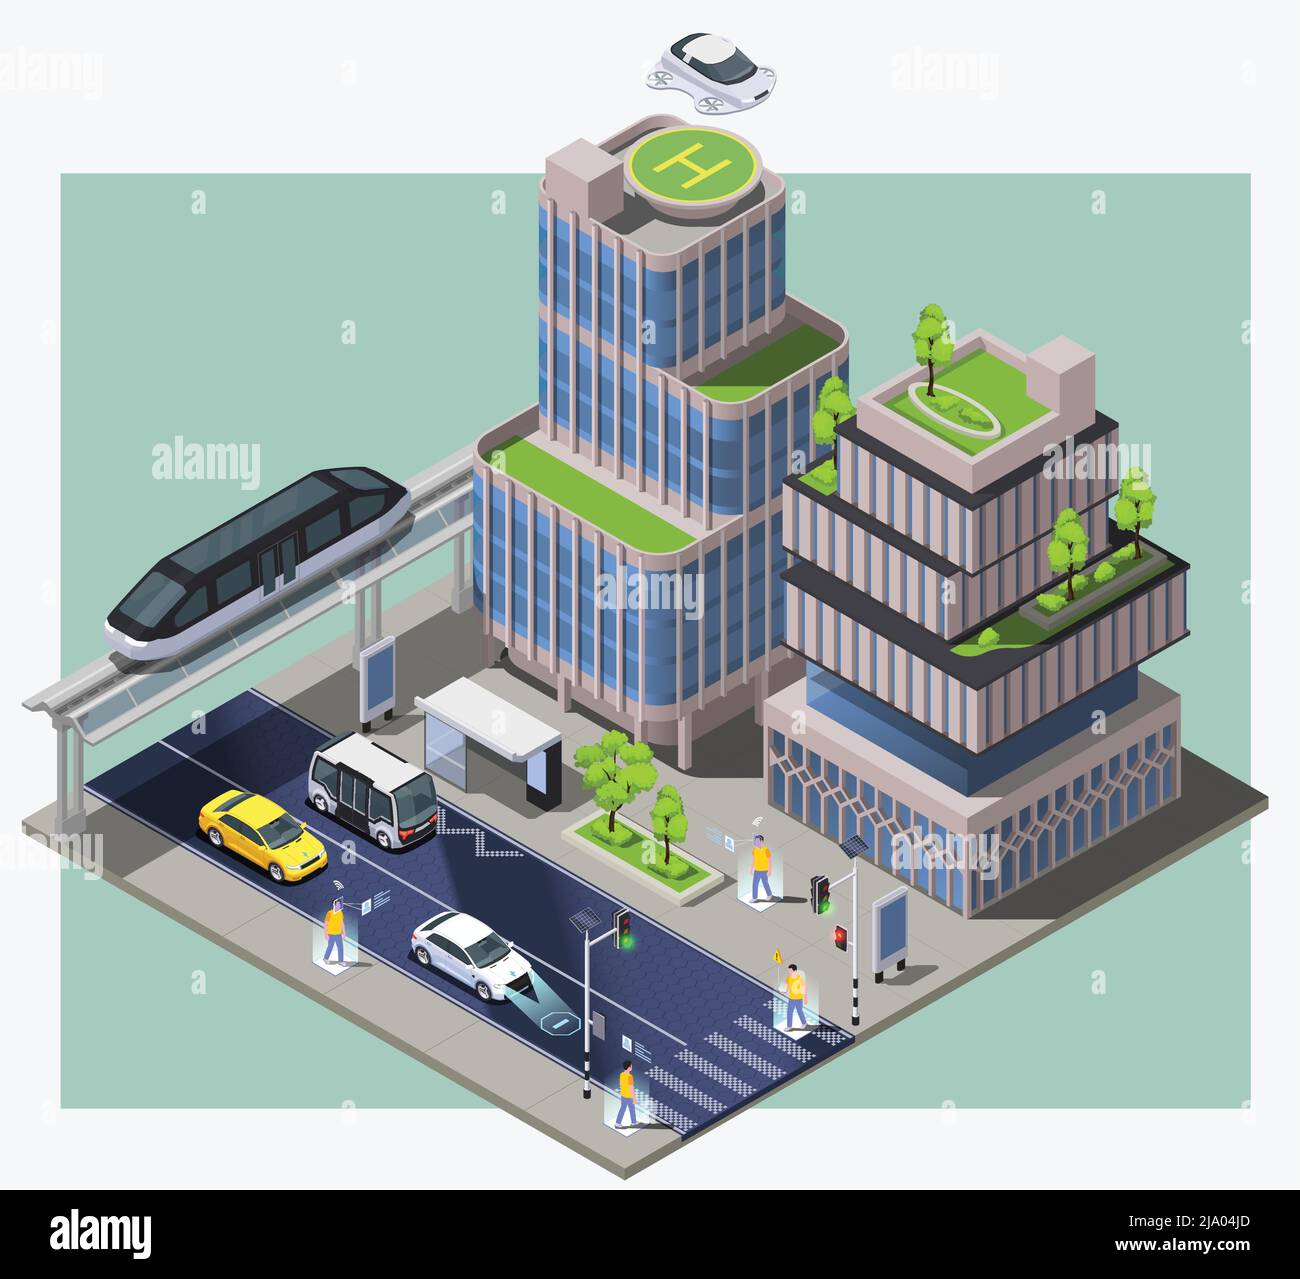 Smart City Technologien isometrische Zusammensetzung mit Bild des Stadtblocks mit entfernten Fahrzeugen Gebäude und Menschen Vektor Illustration Stock Vektor